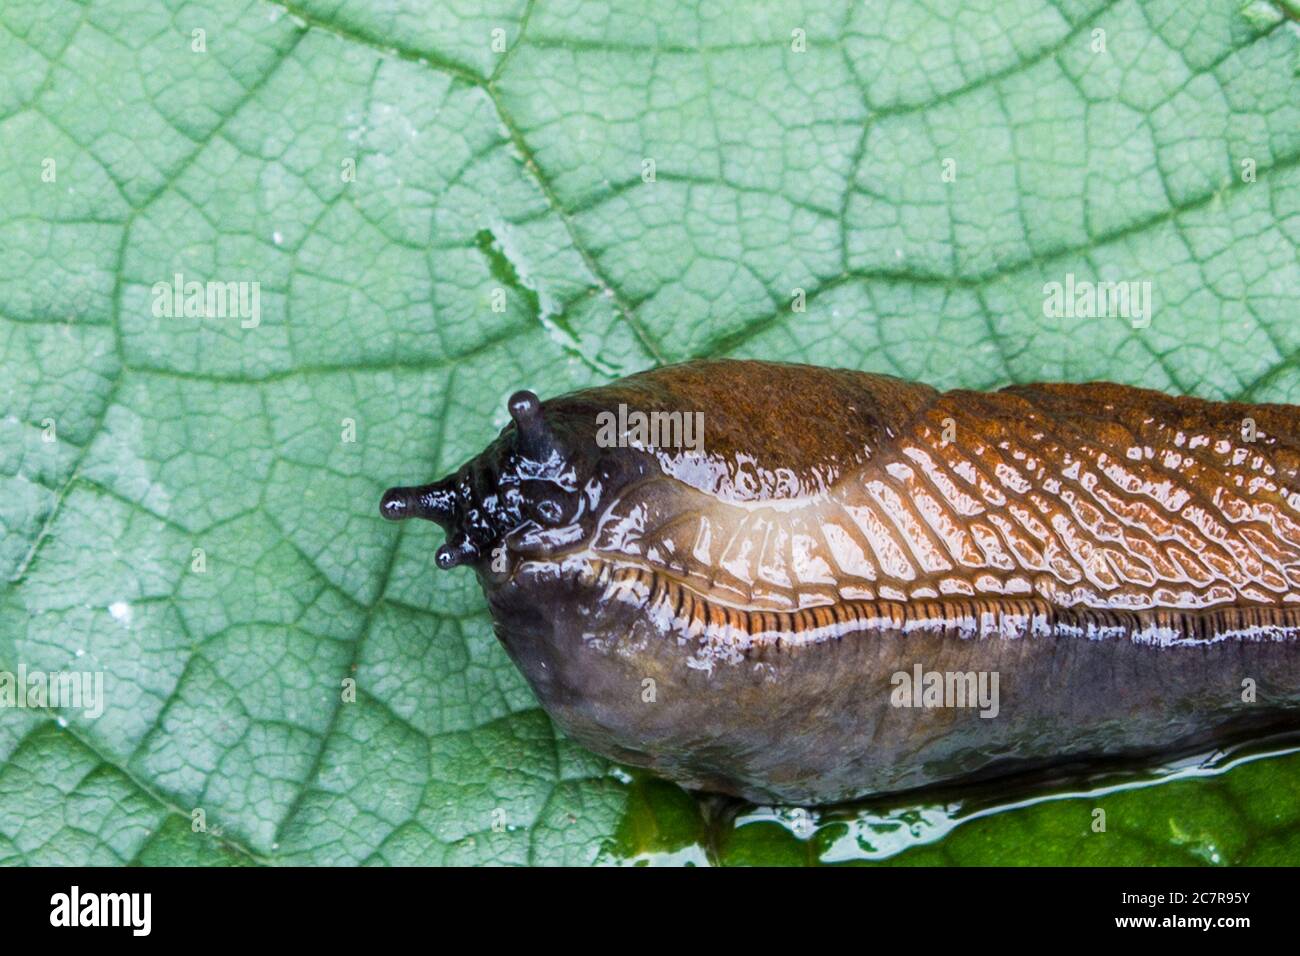 Detail of slug arion lusitanicus on leaf in the garden Stock Photo